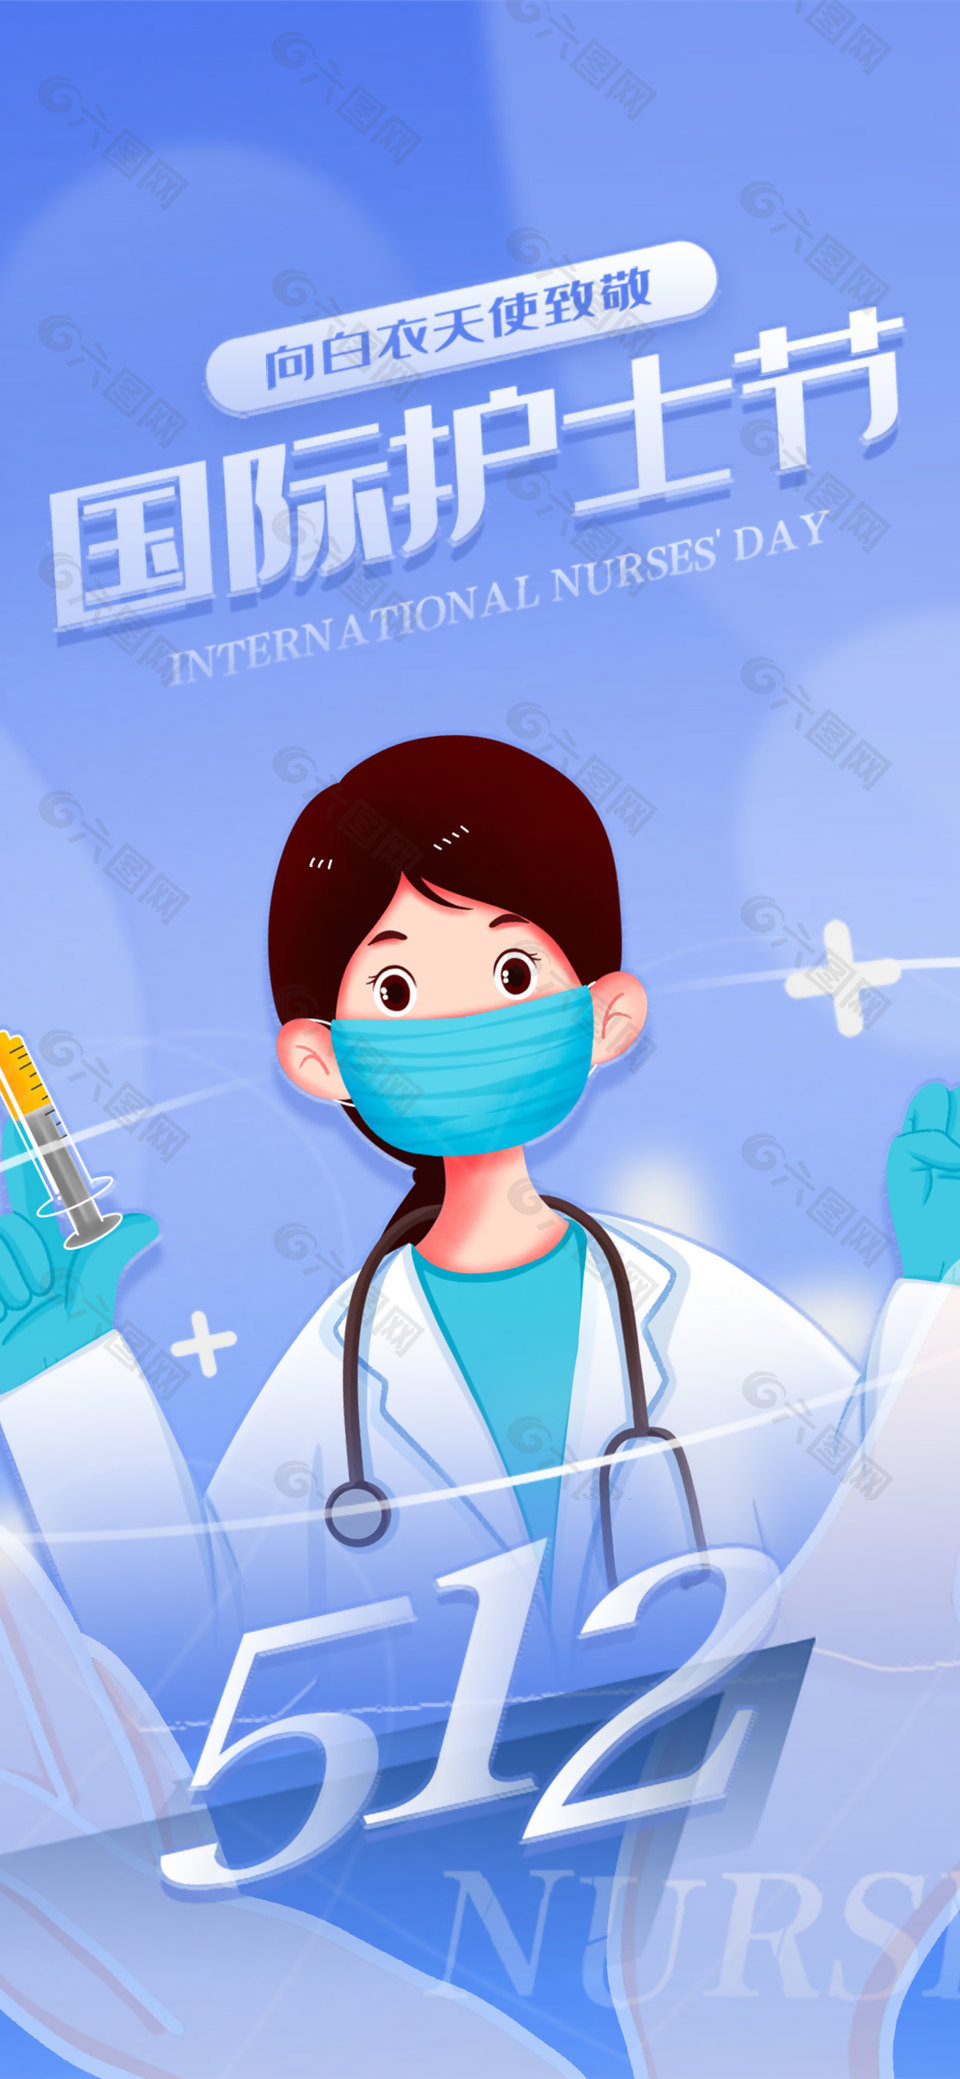 国际护士节简约护士插画致敬主题海报